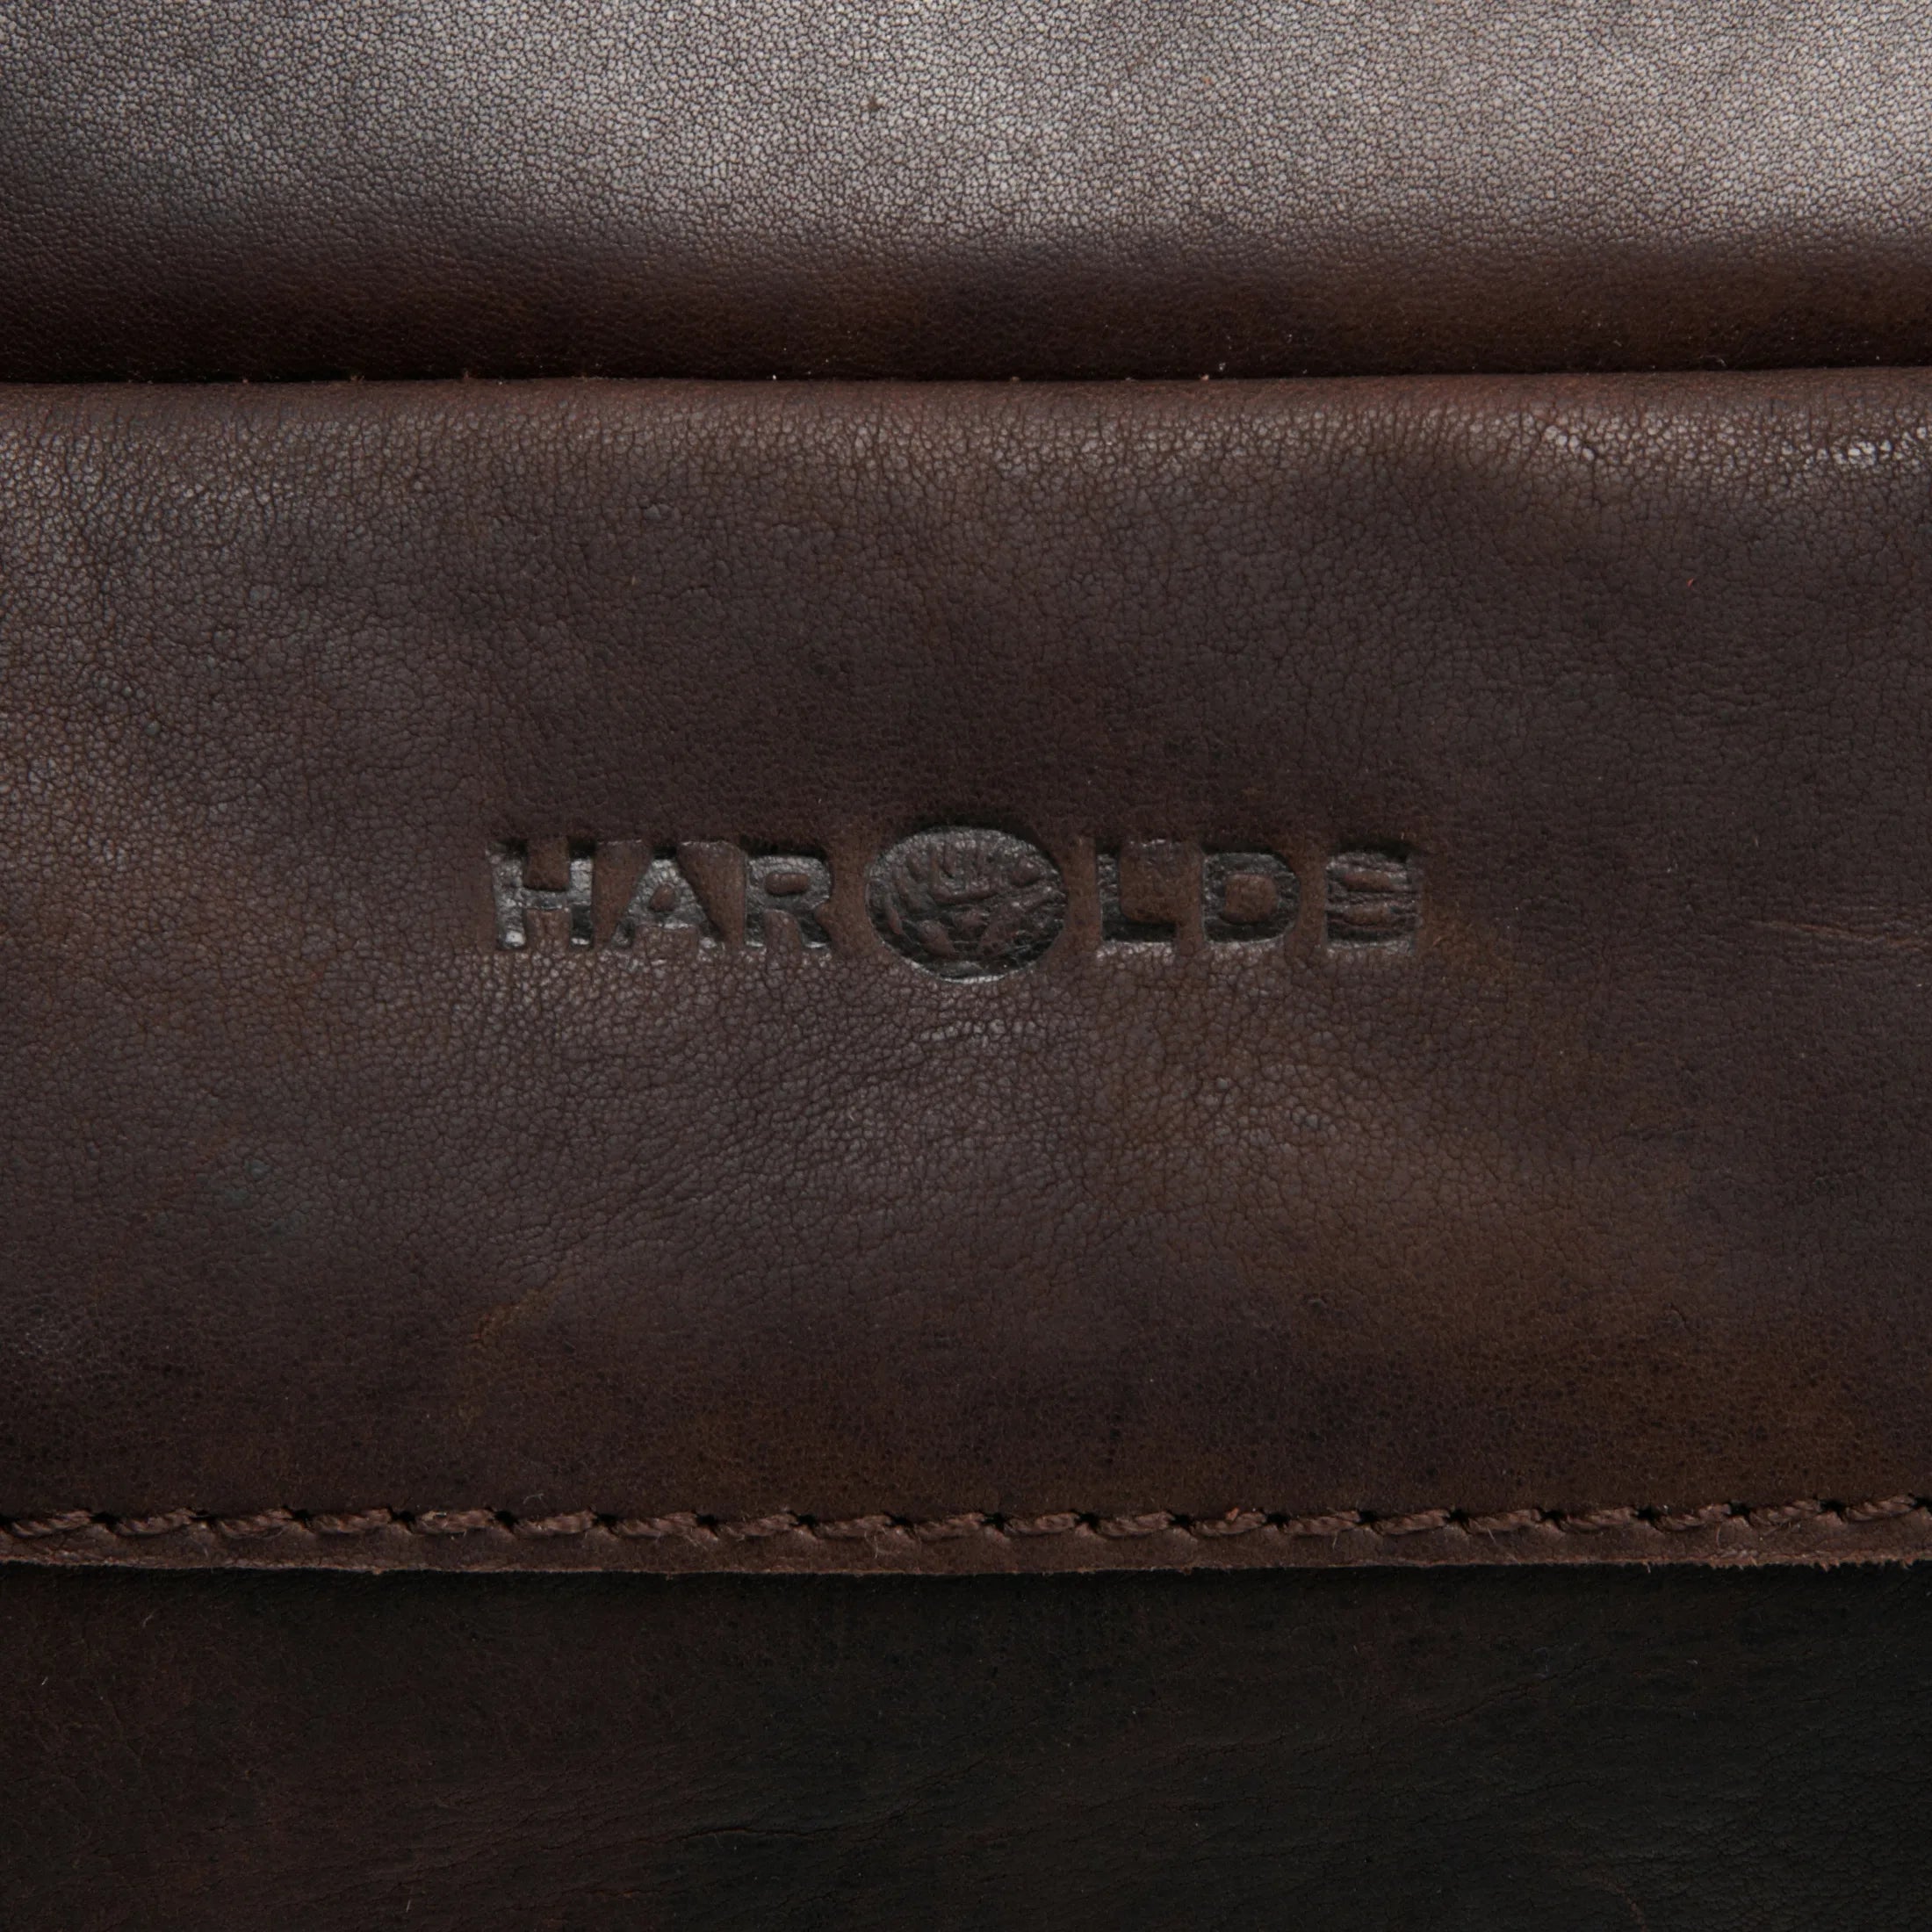 Harolds R. Johnson sac d'affaires avec compartiment pour ordinateur portable en cuir 40 cm - marron foncé